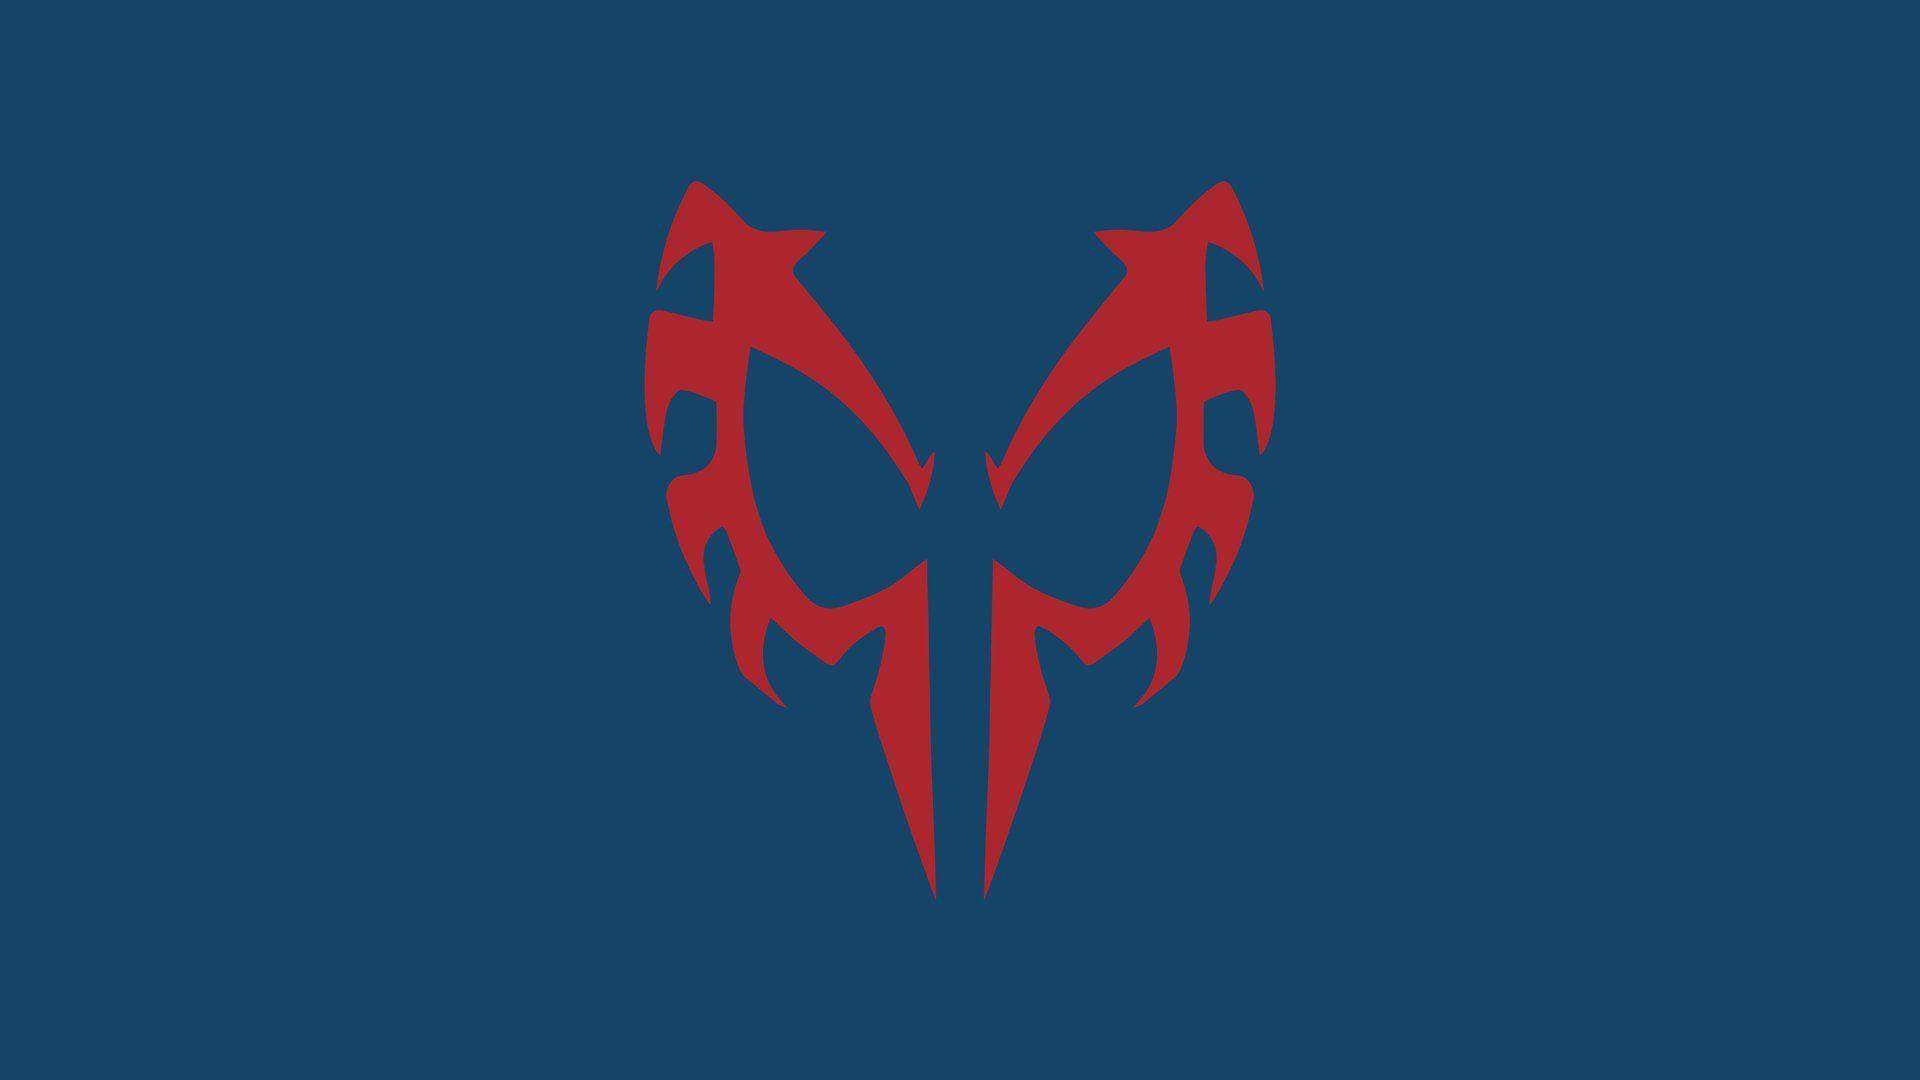 Spider Man 2099 Logo Full HD Wallpaper